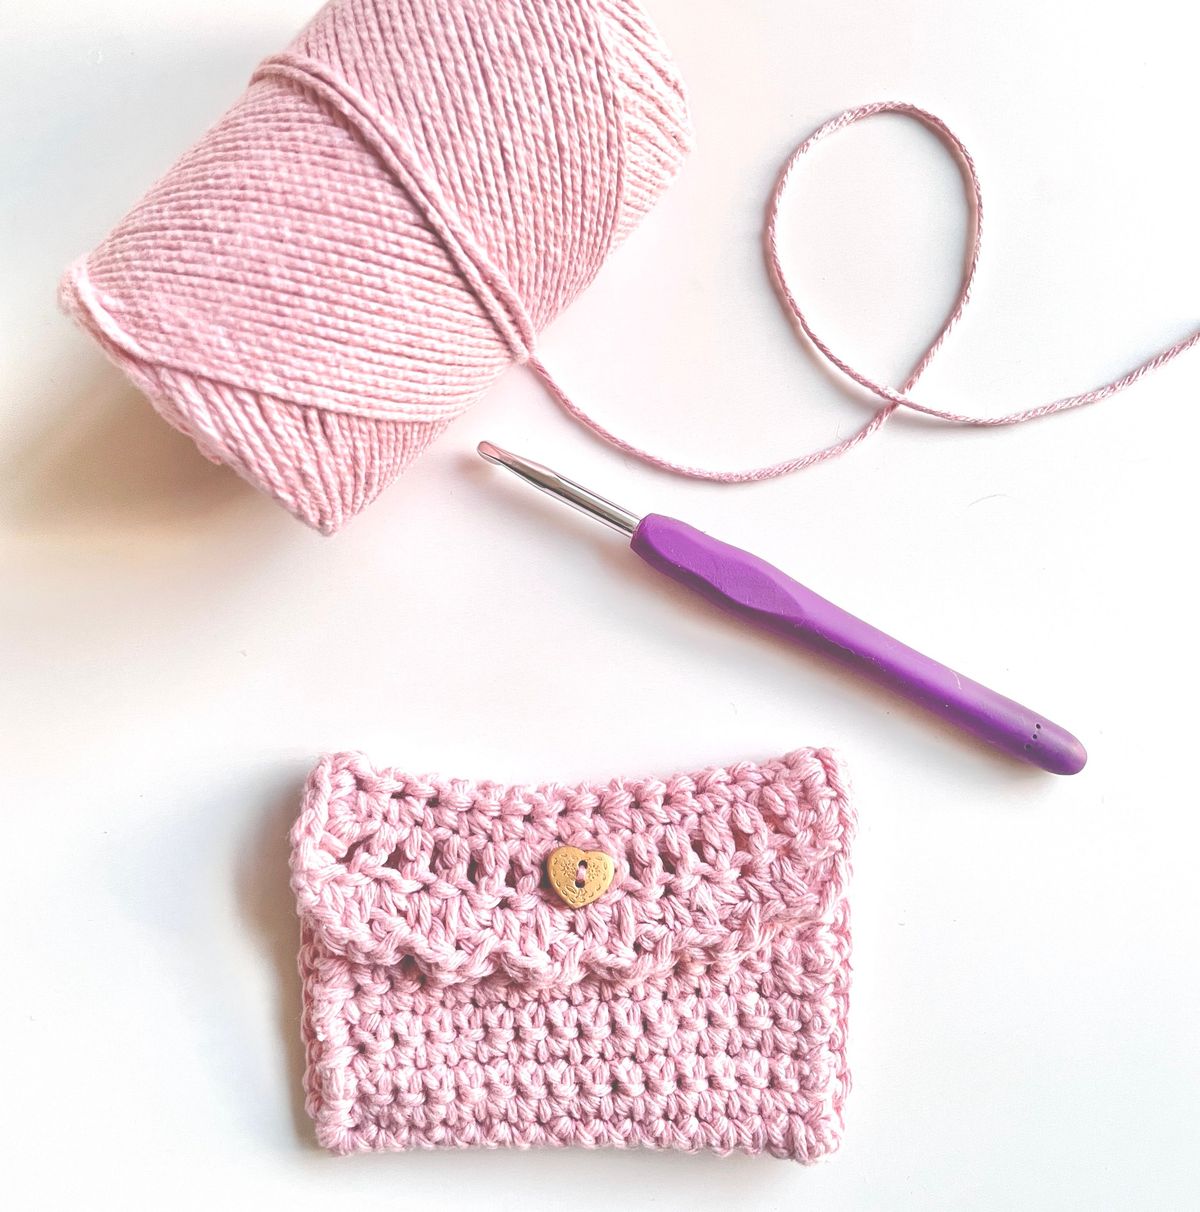 Learn to Crochet - Beginners (Level 0)